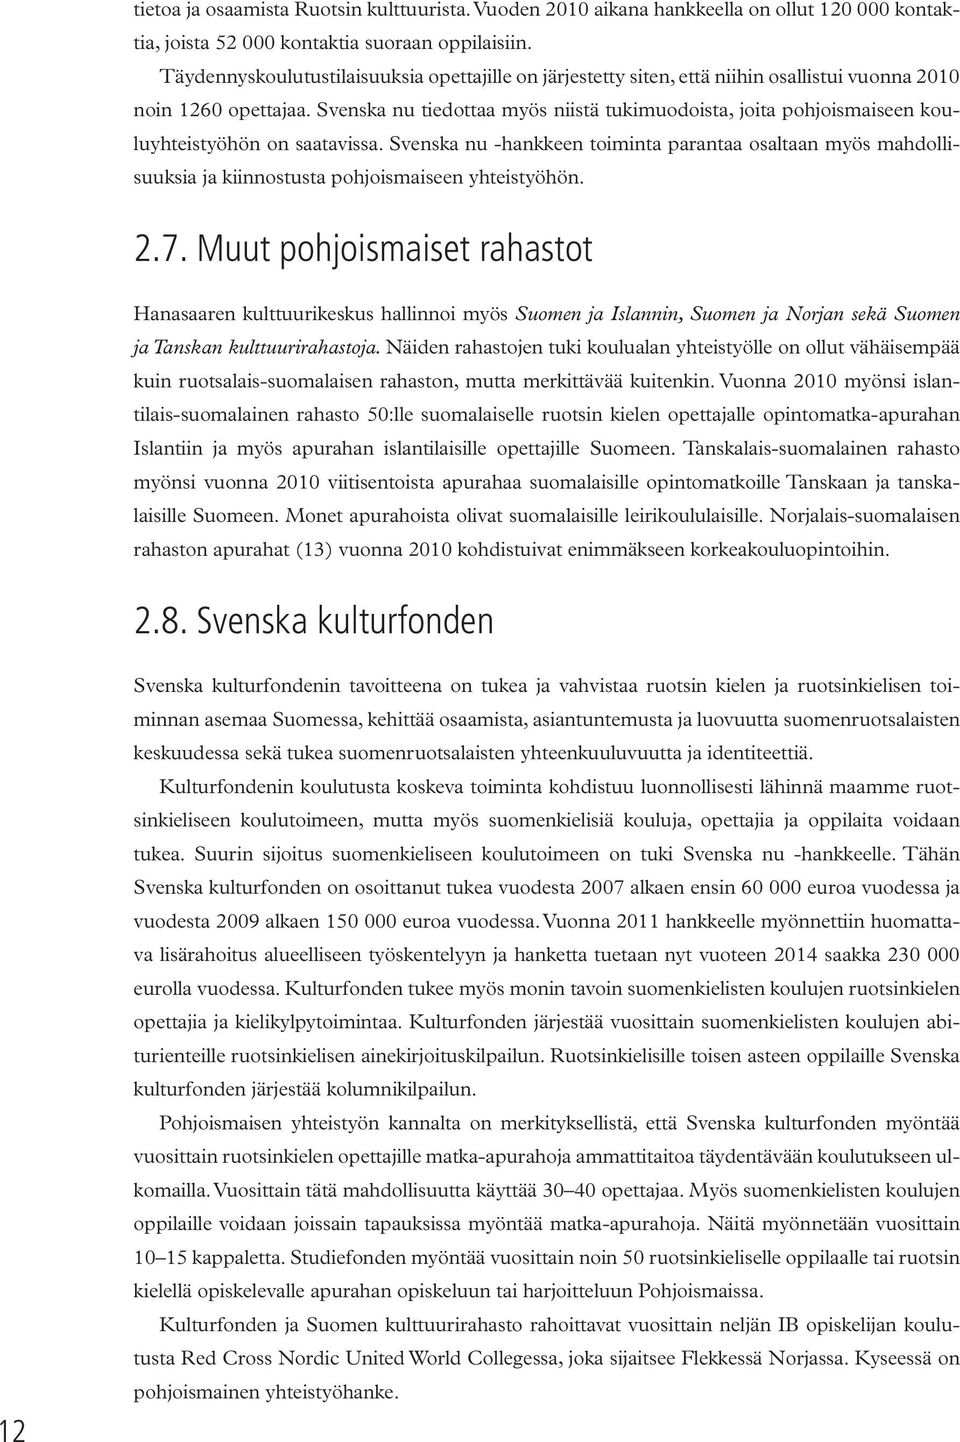 Svenska nu tiedottaa myös niistä tukimuodoista, joita pohjoismaiseen kouluyhteistyöhön on saatavissa.